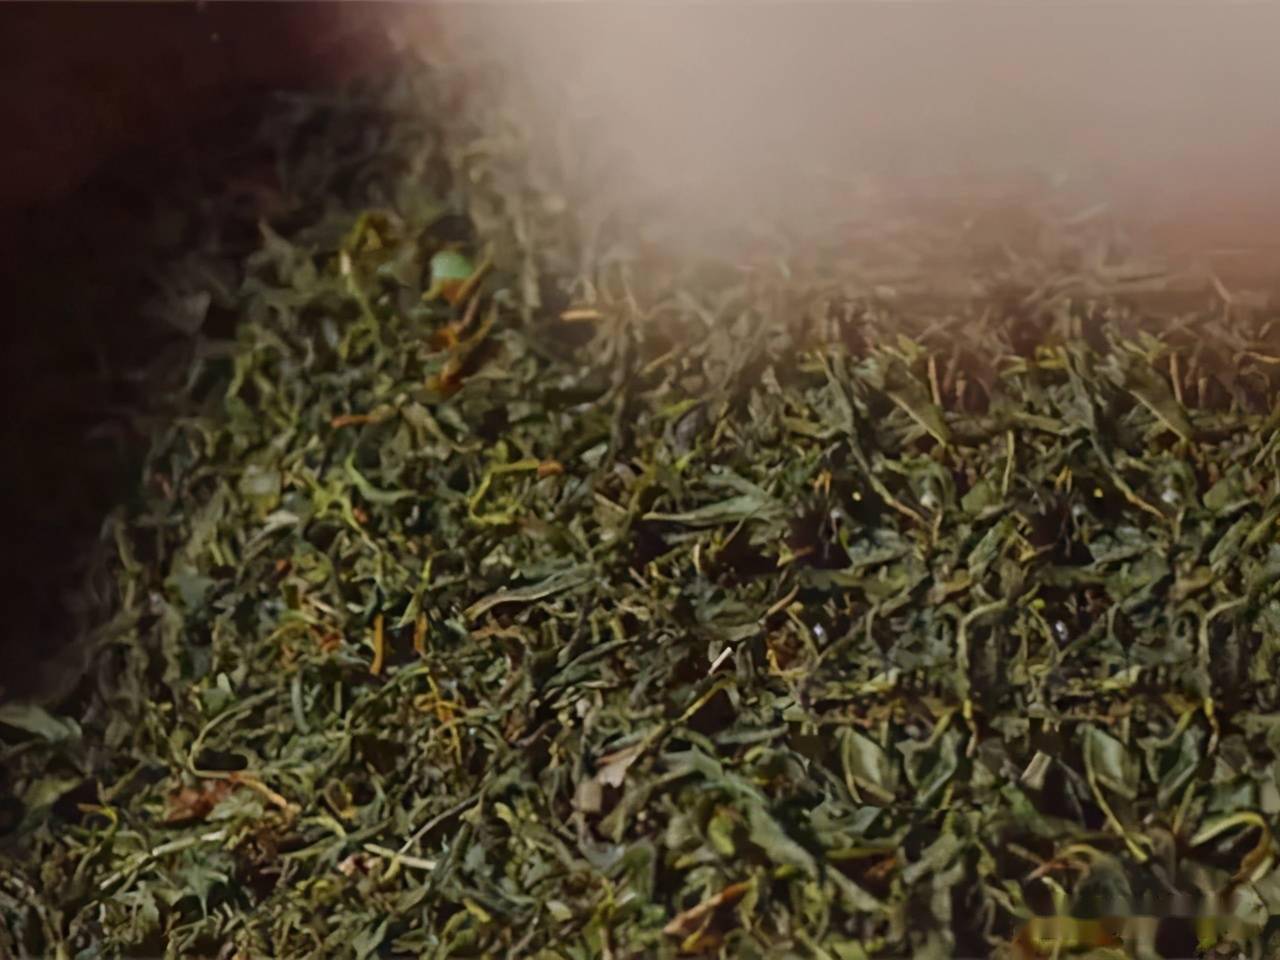 发酵将揉捻完的茶叶放到竹篓内,茶叶在自身酶的作用下进行发酵,经过一